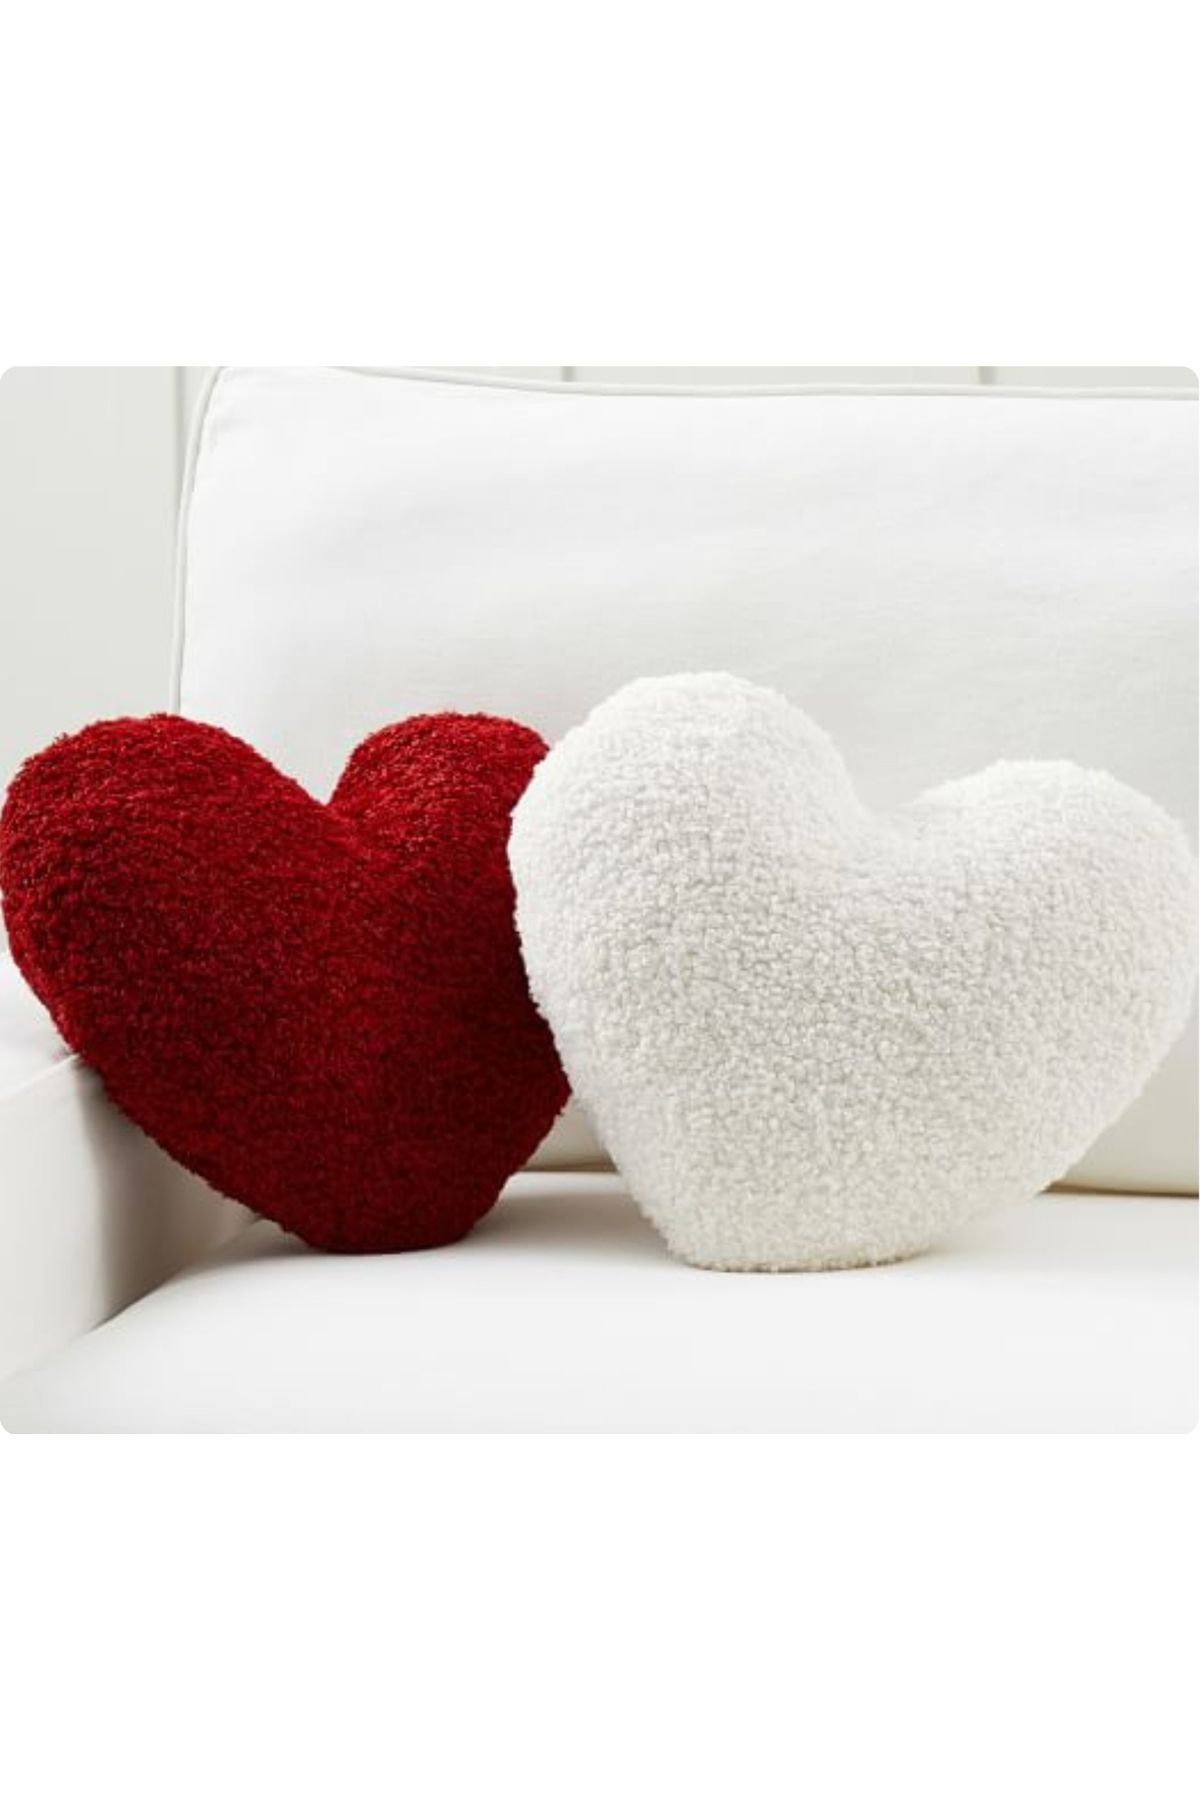 ERİZA Sevgililer Günü Teddy İç Dolgulu Kalp Yastık & Valentine Days Kırmızı Kalp